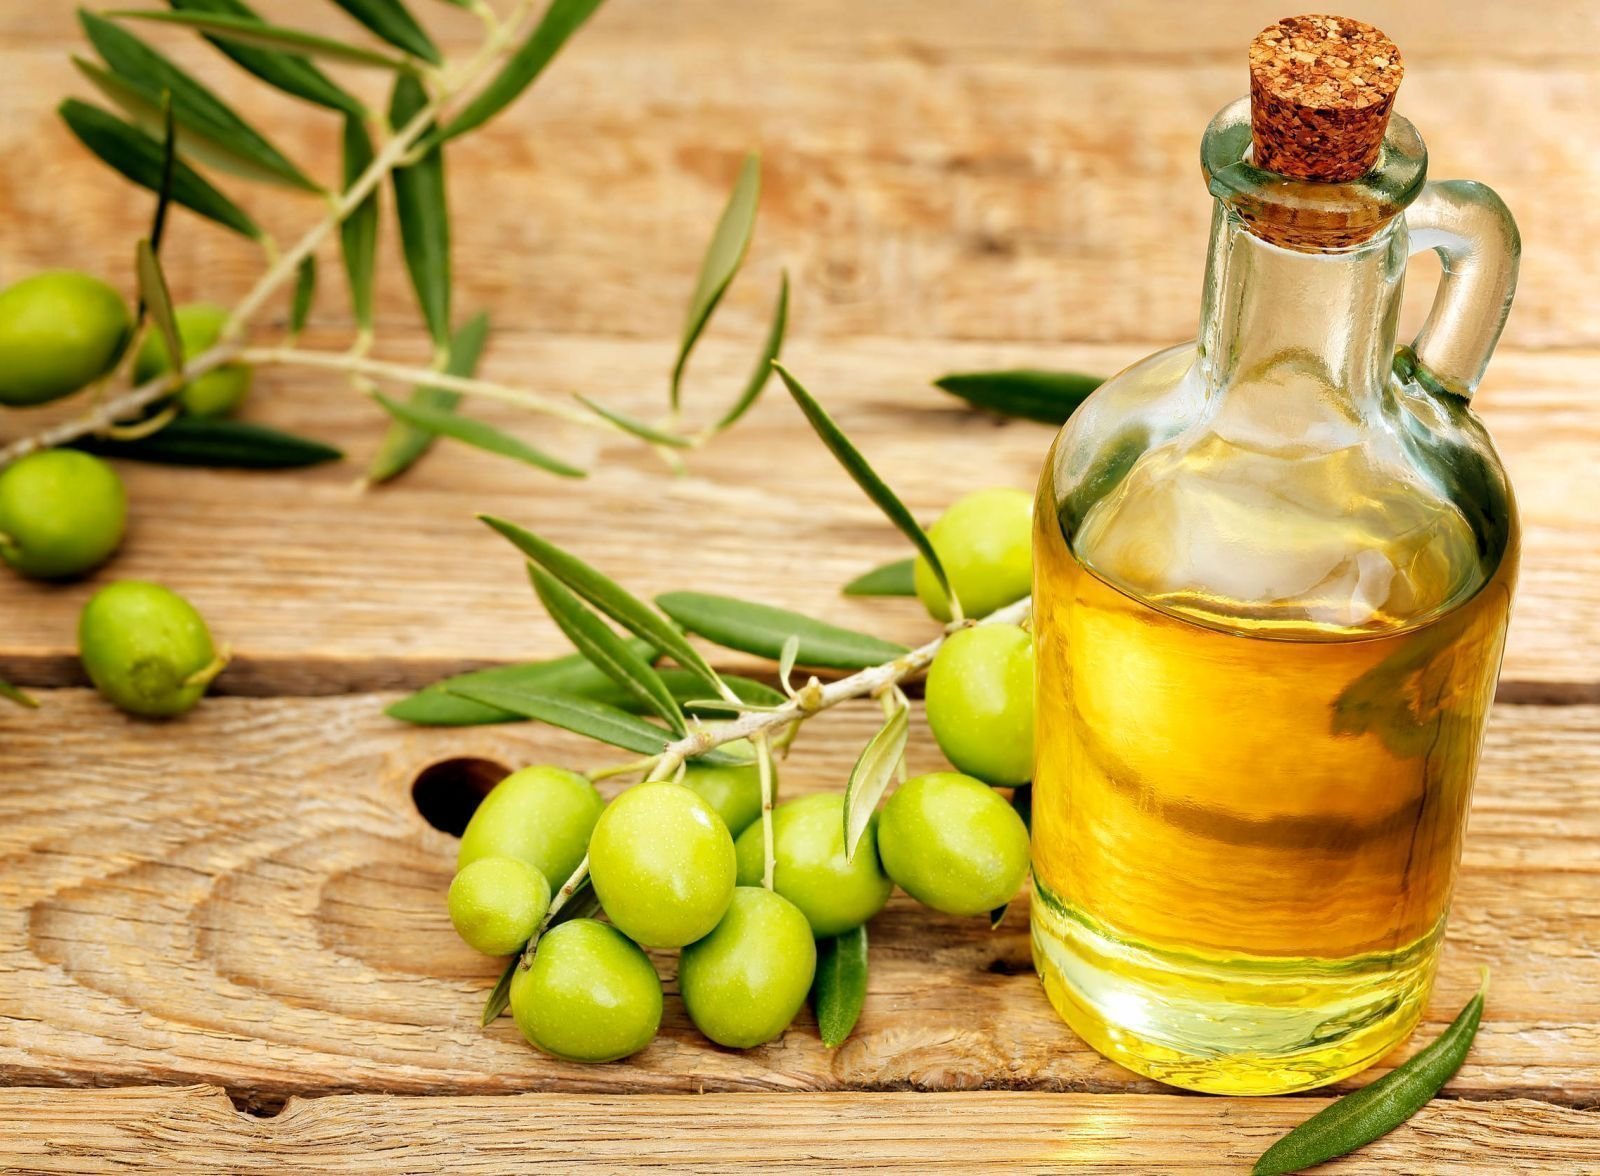 Как принимать оливковое масло в лечебных целях